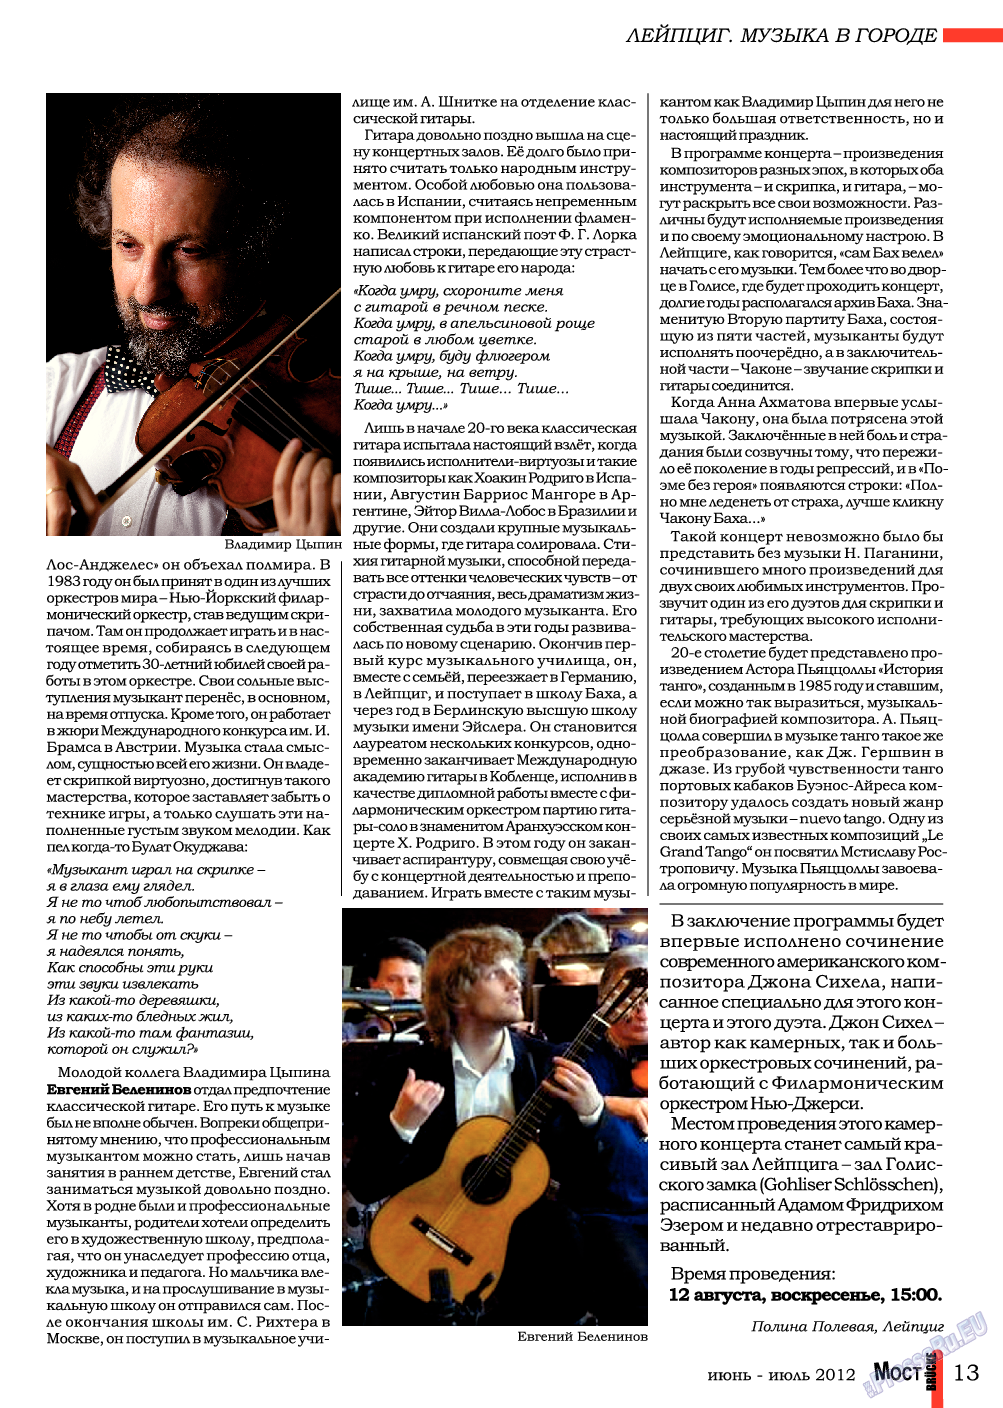 Мост (журнал). 2012 год, номер 6, стр. 13